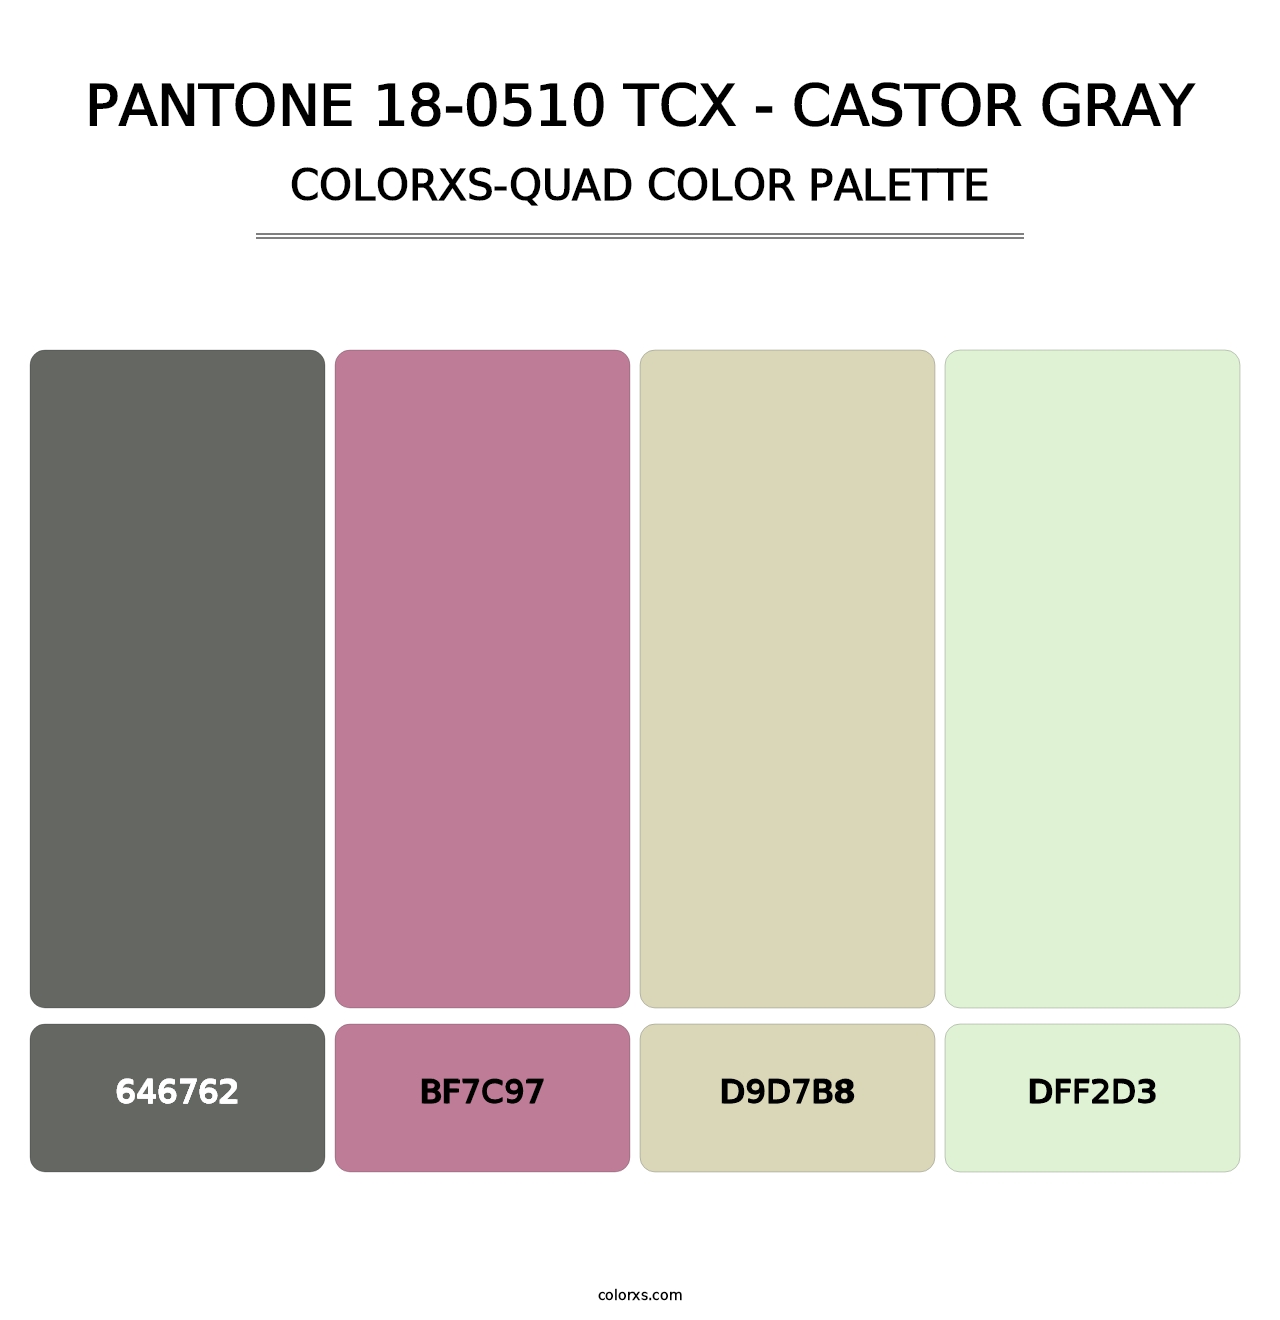 PANTONE 18-0510 TCX - Castor Gray - Colorxs Quad Palette